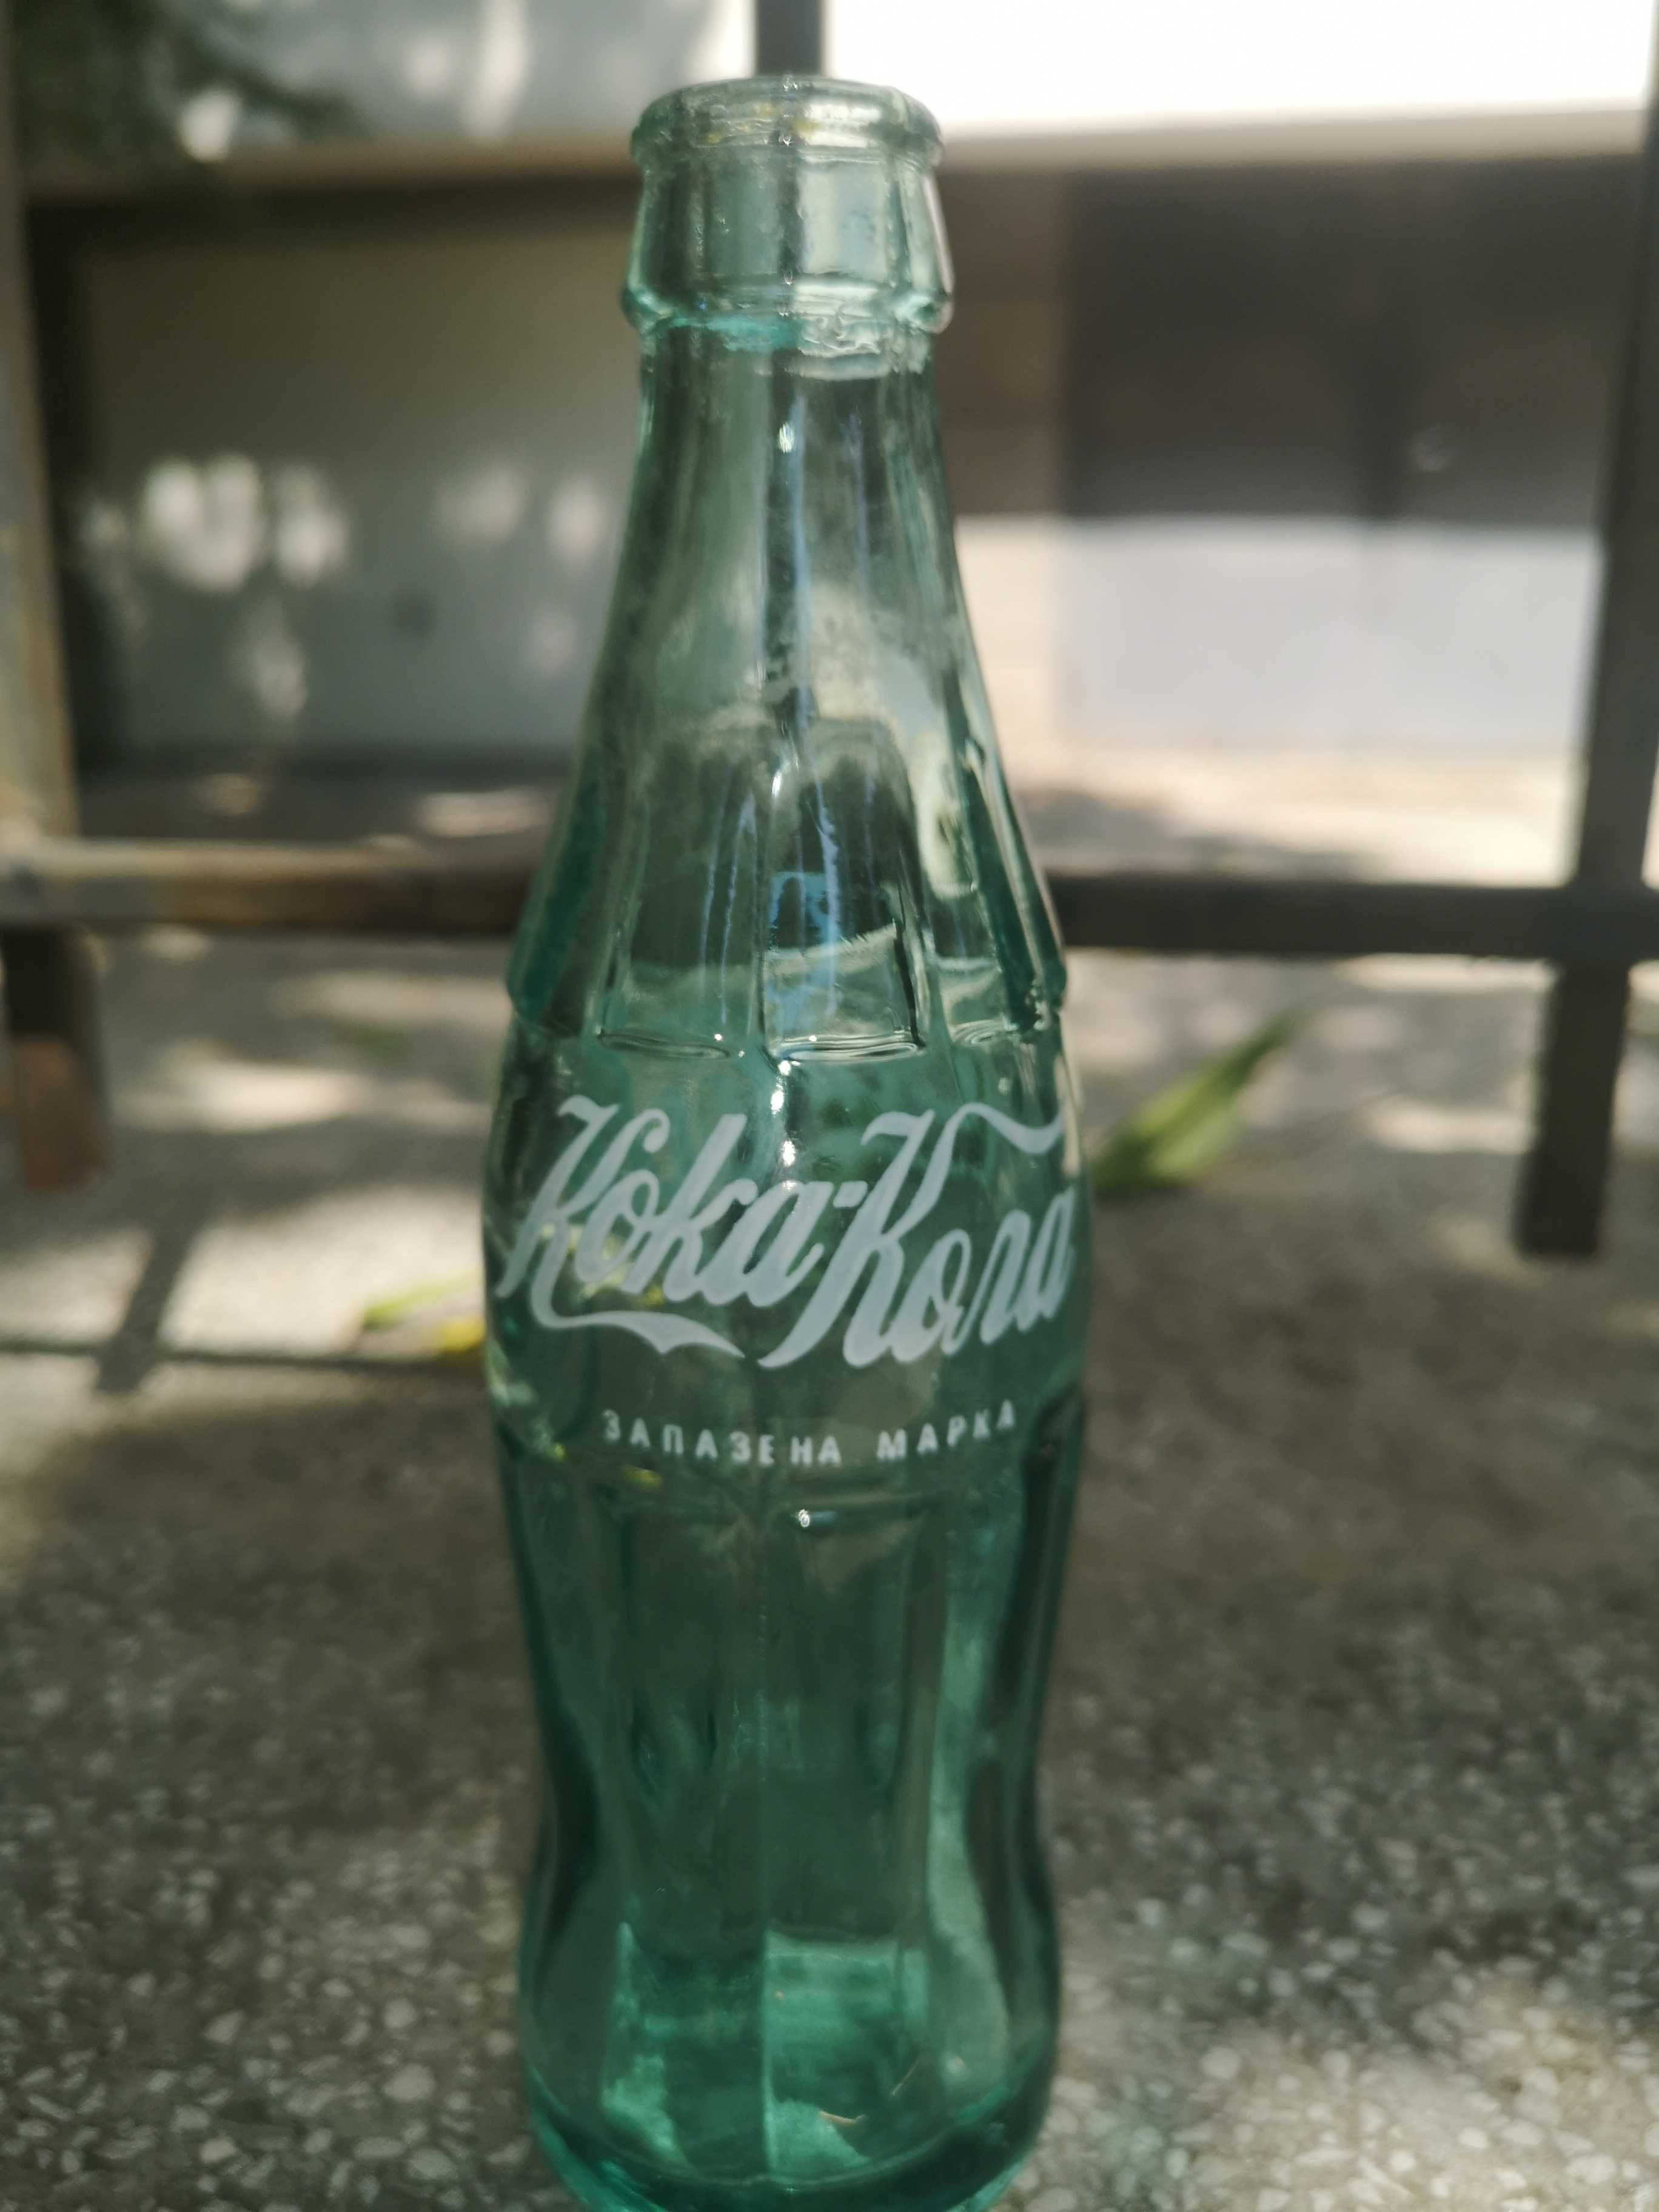 Стъклени бутилки Кока Кола с надпис на Български